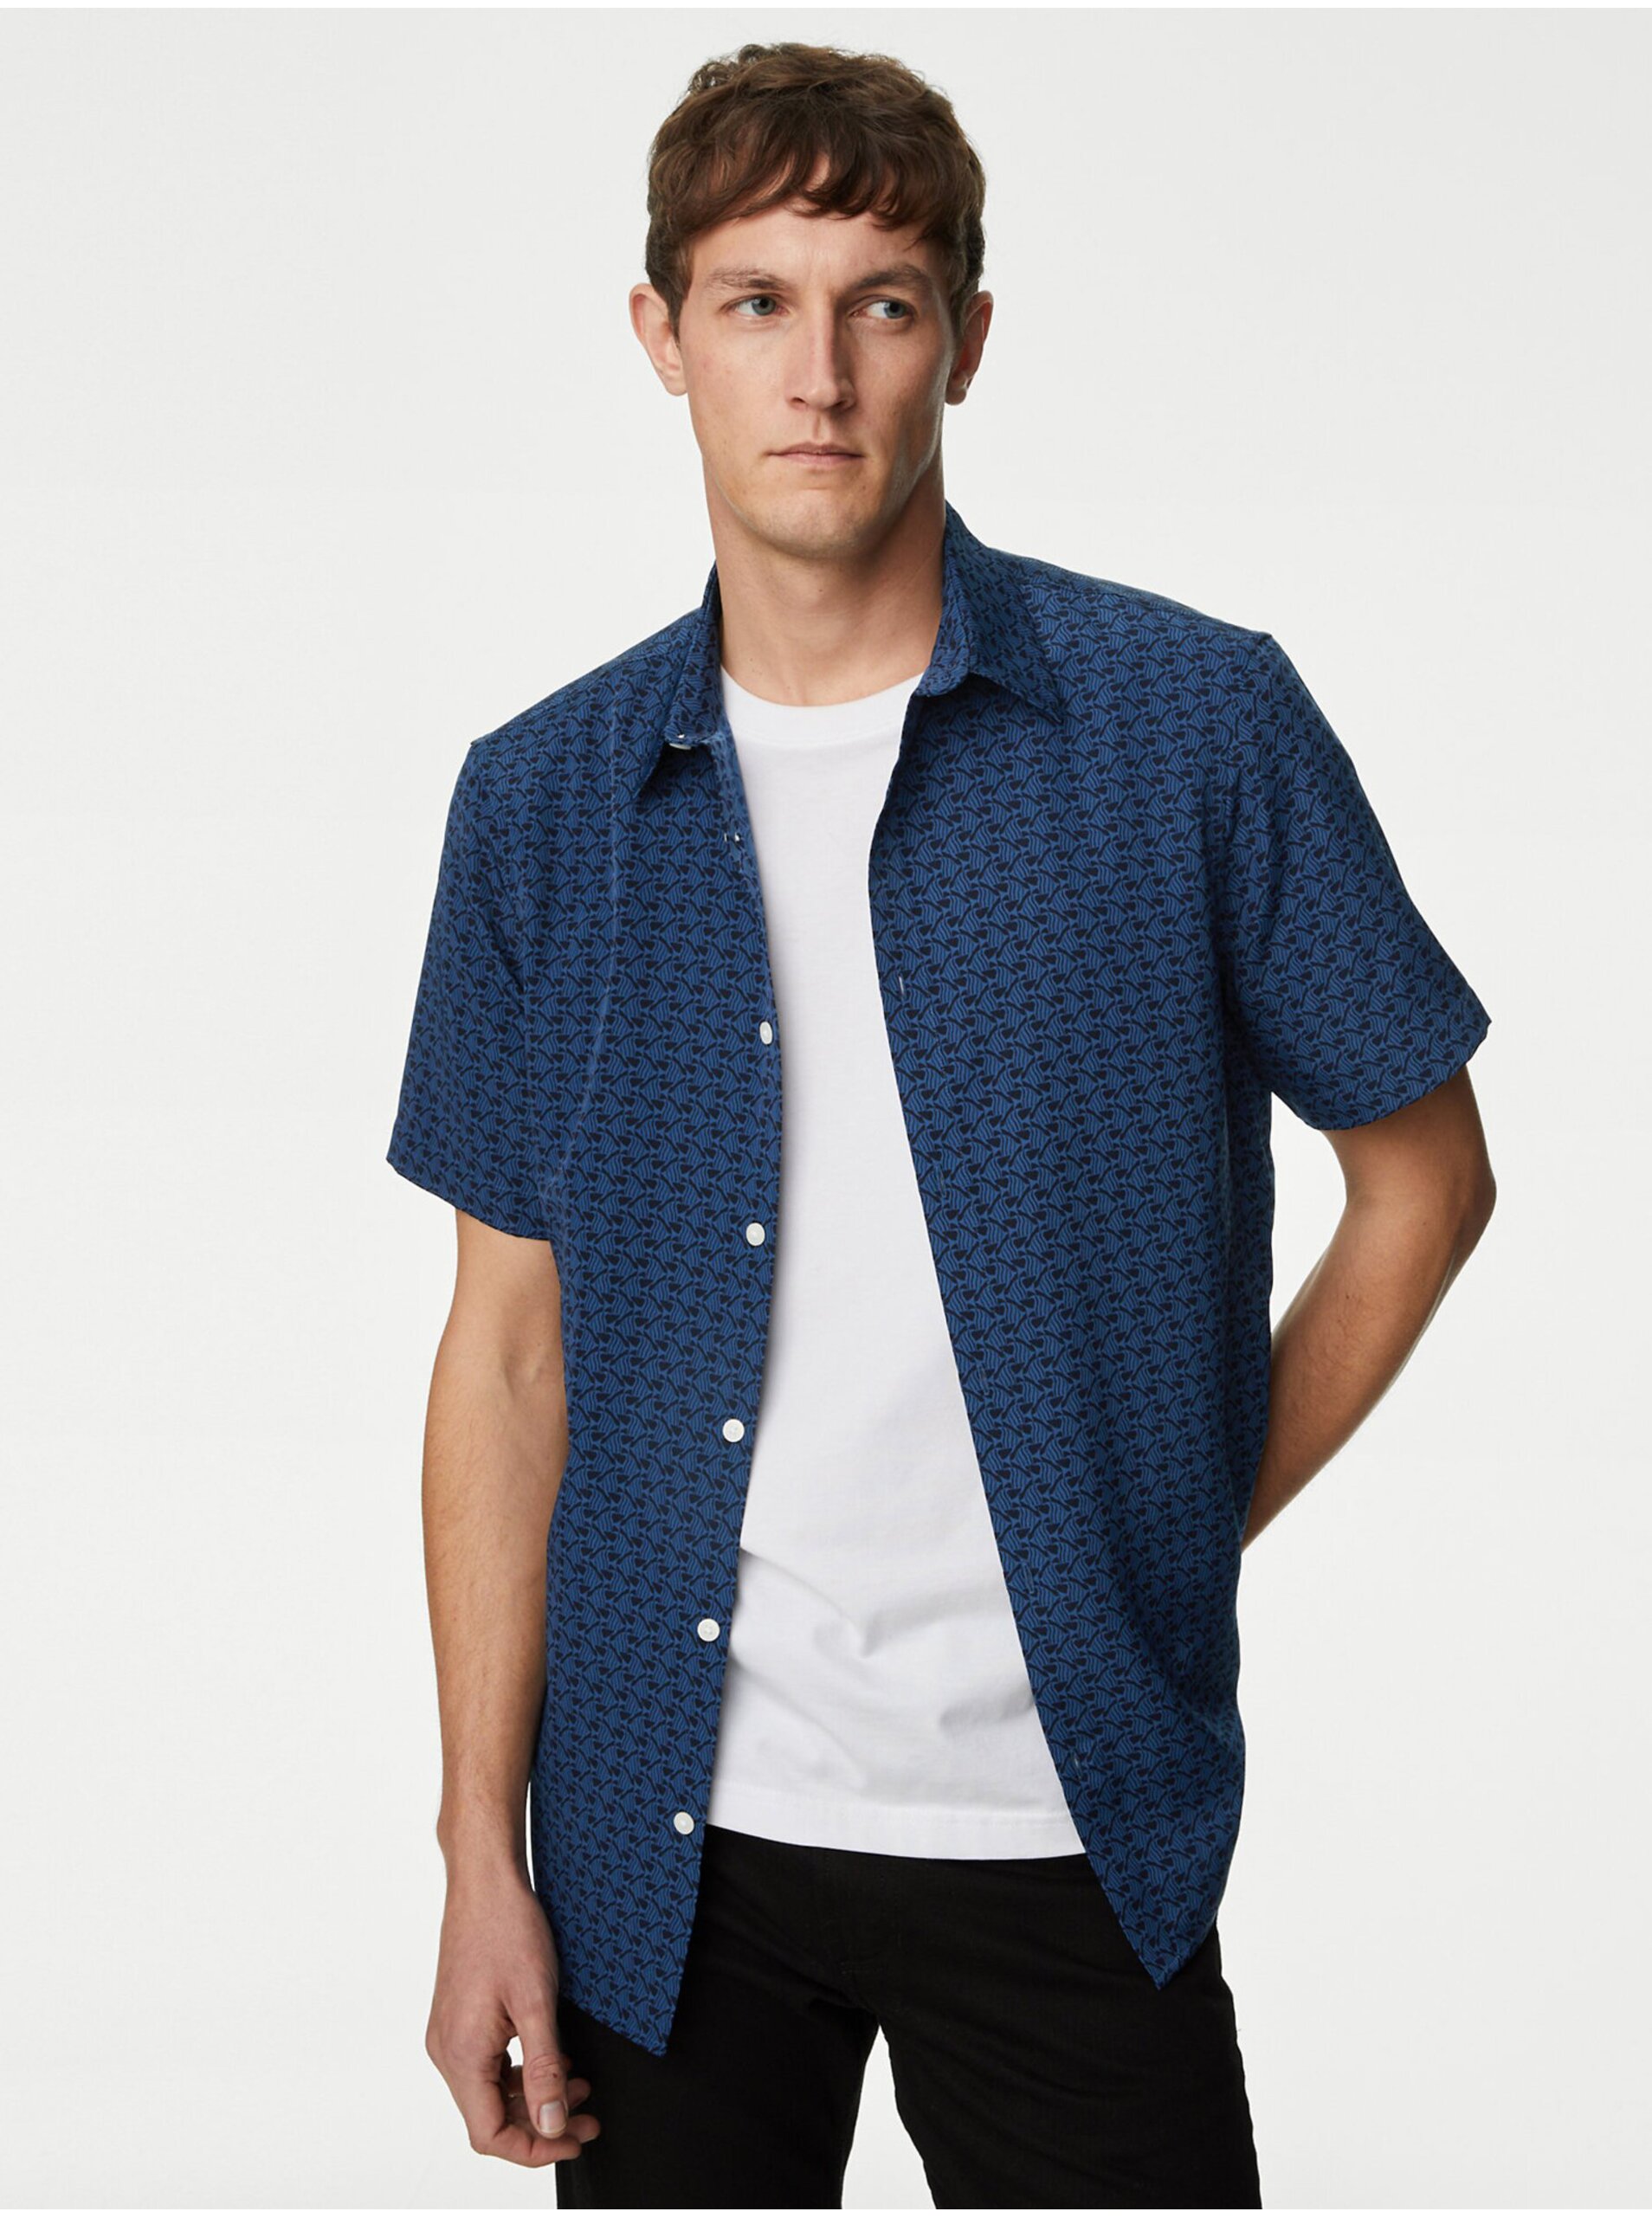 Lacno Tmavomodrá pánska vzorovaná košeľa s krátkym rukávom Marks & Spencer